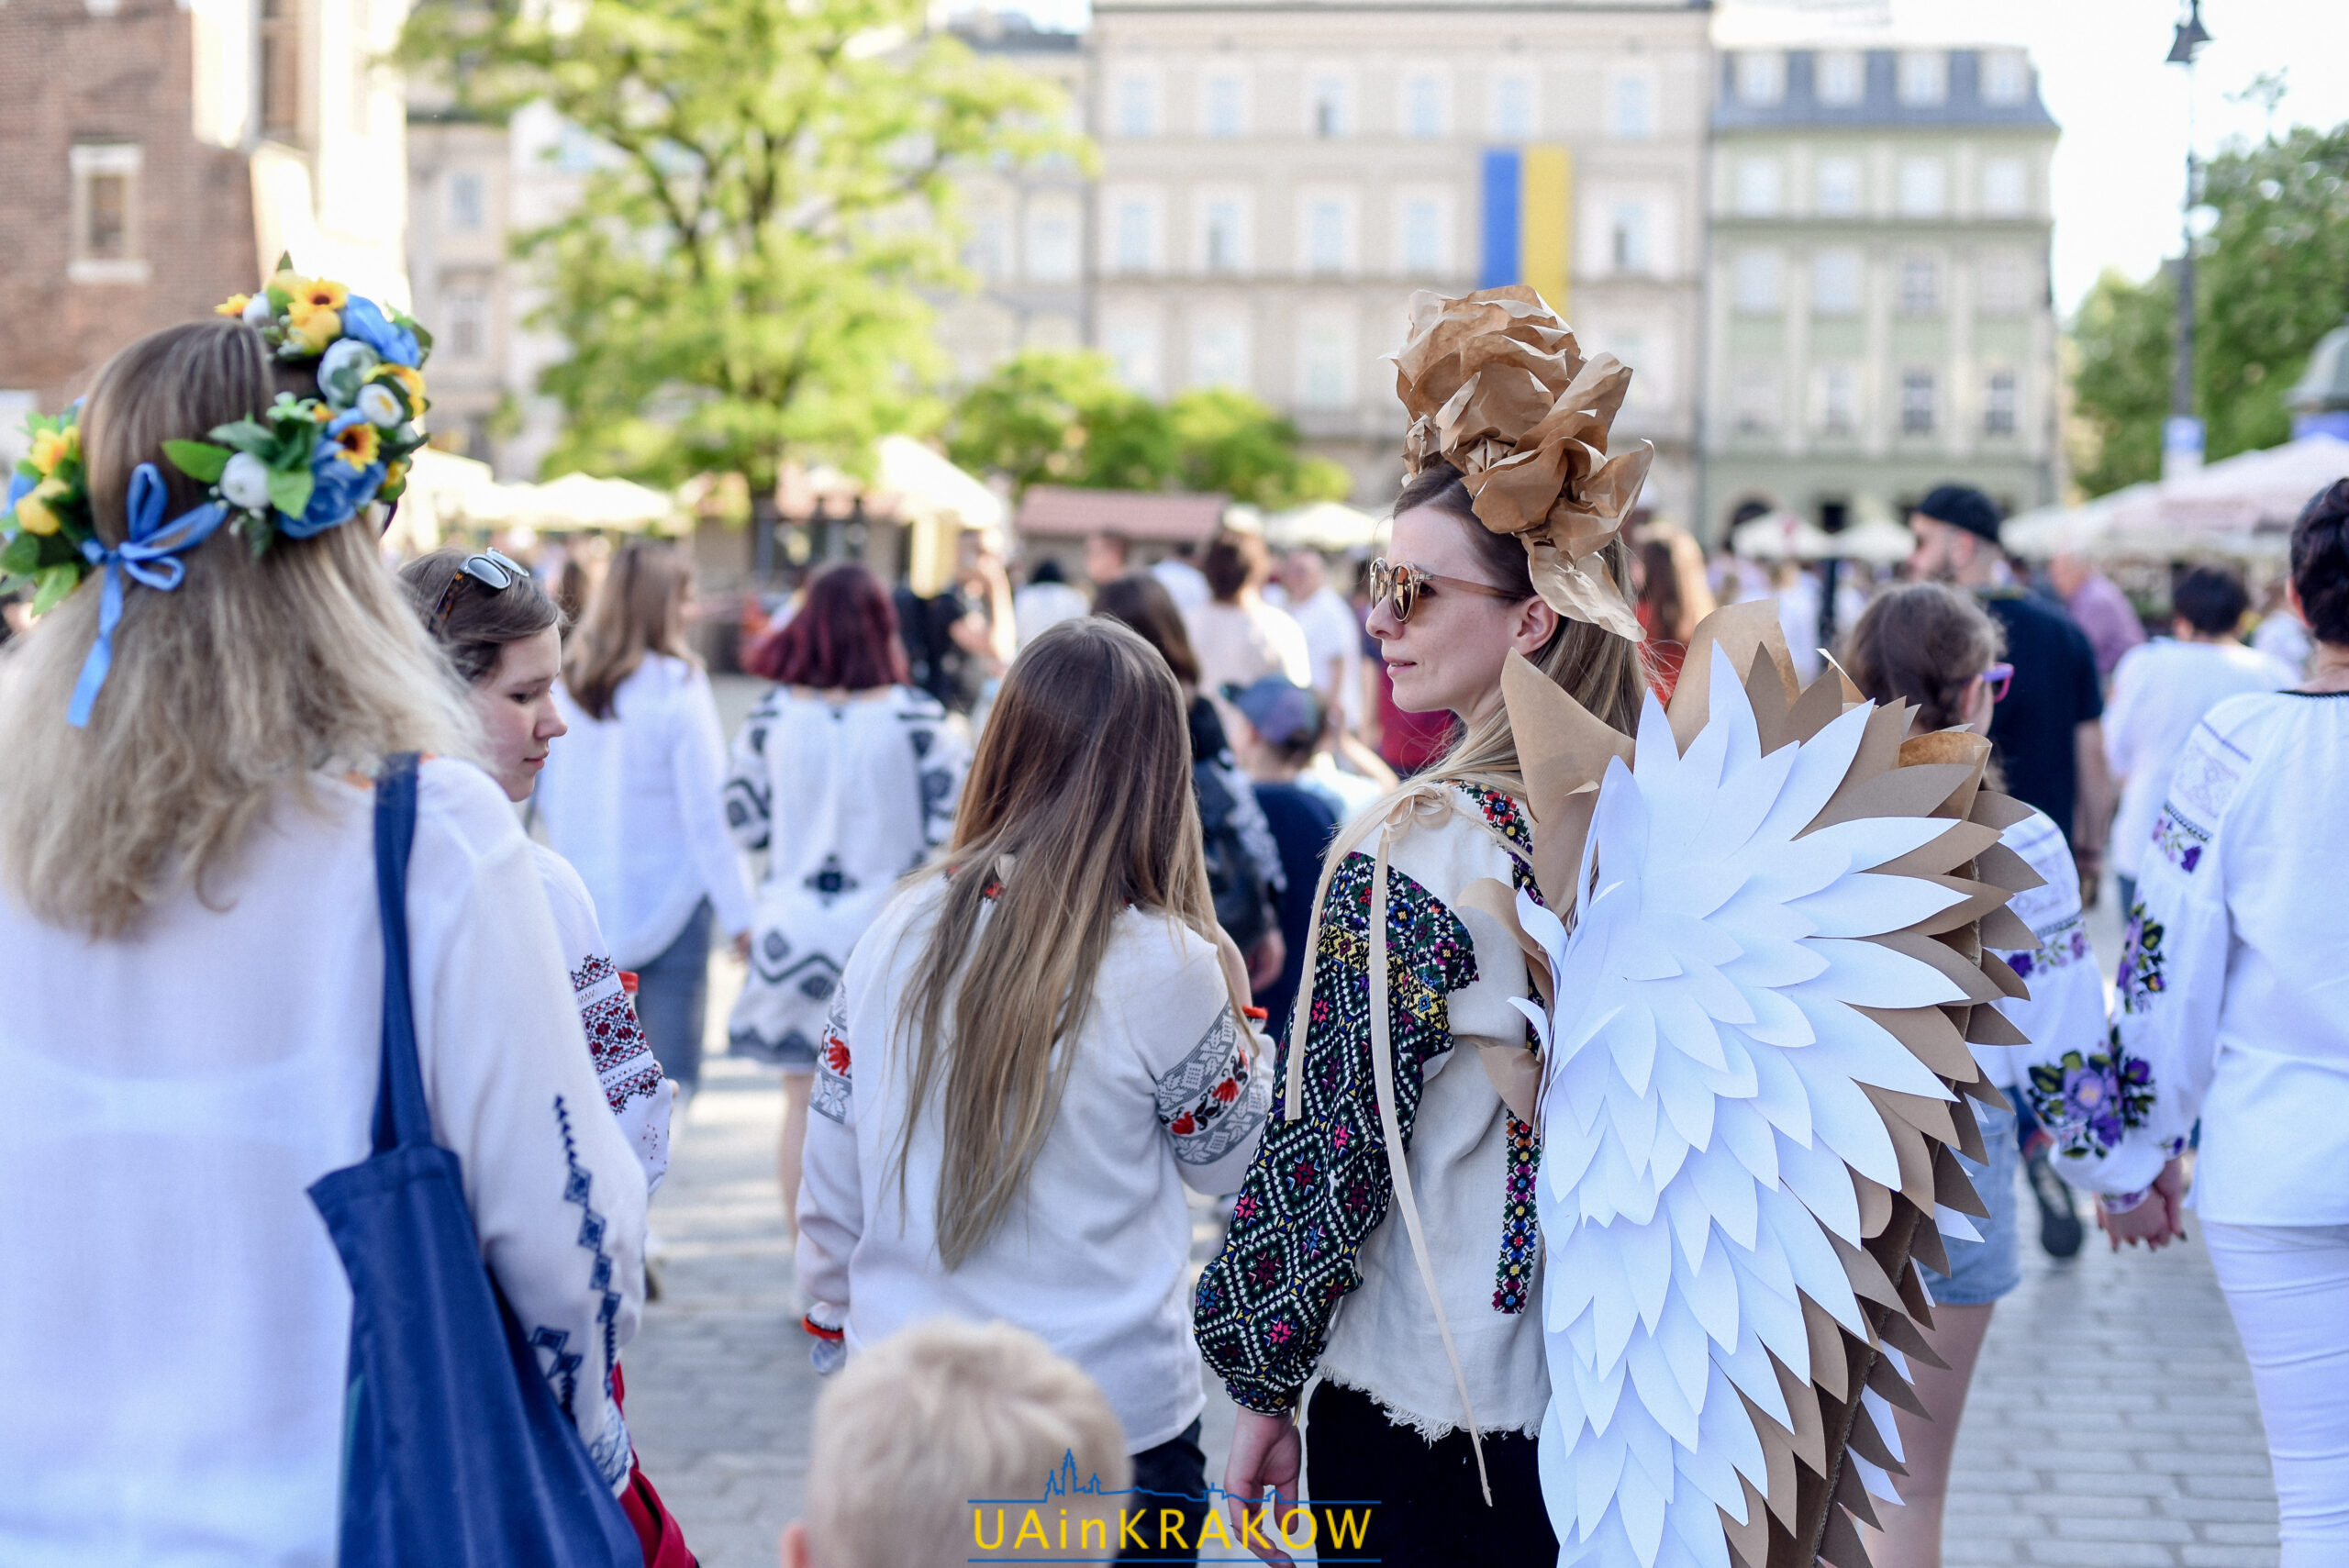 “Вишиванка надає крила”: як пройшов Марш вишиванки у Кракові [ФОТО] dsc 3536 scaled